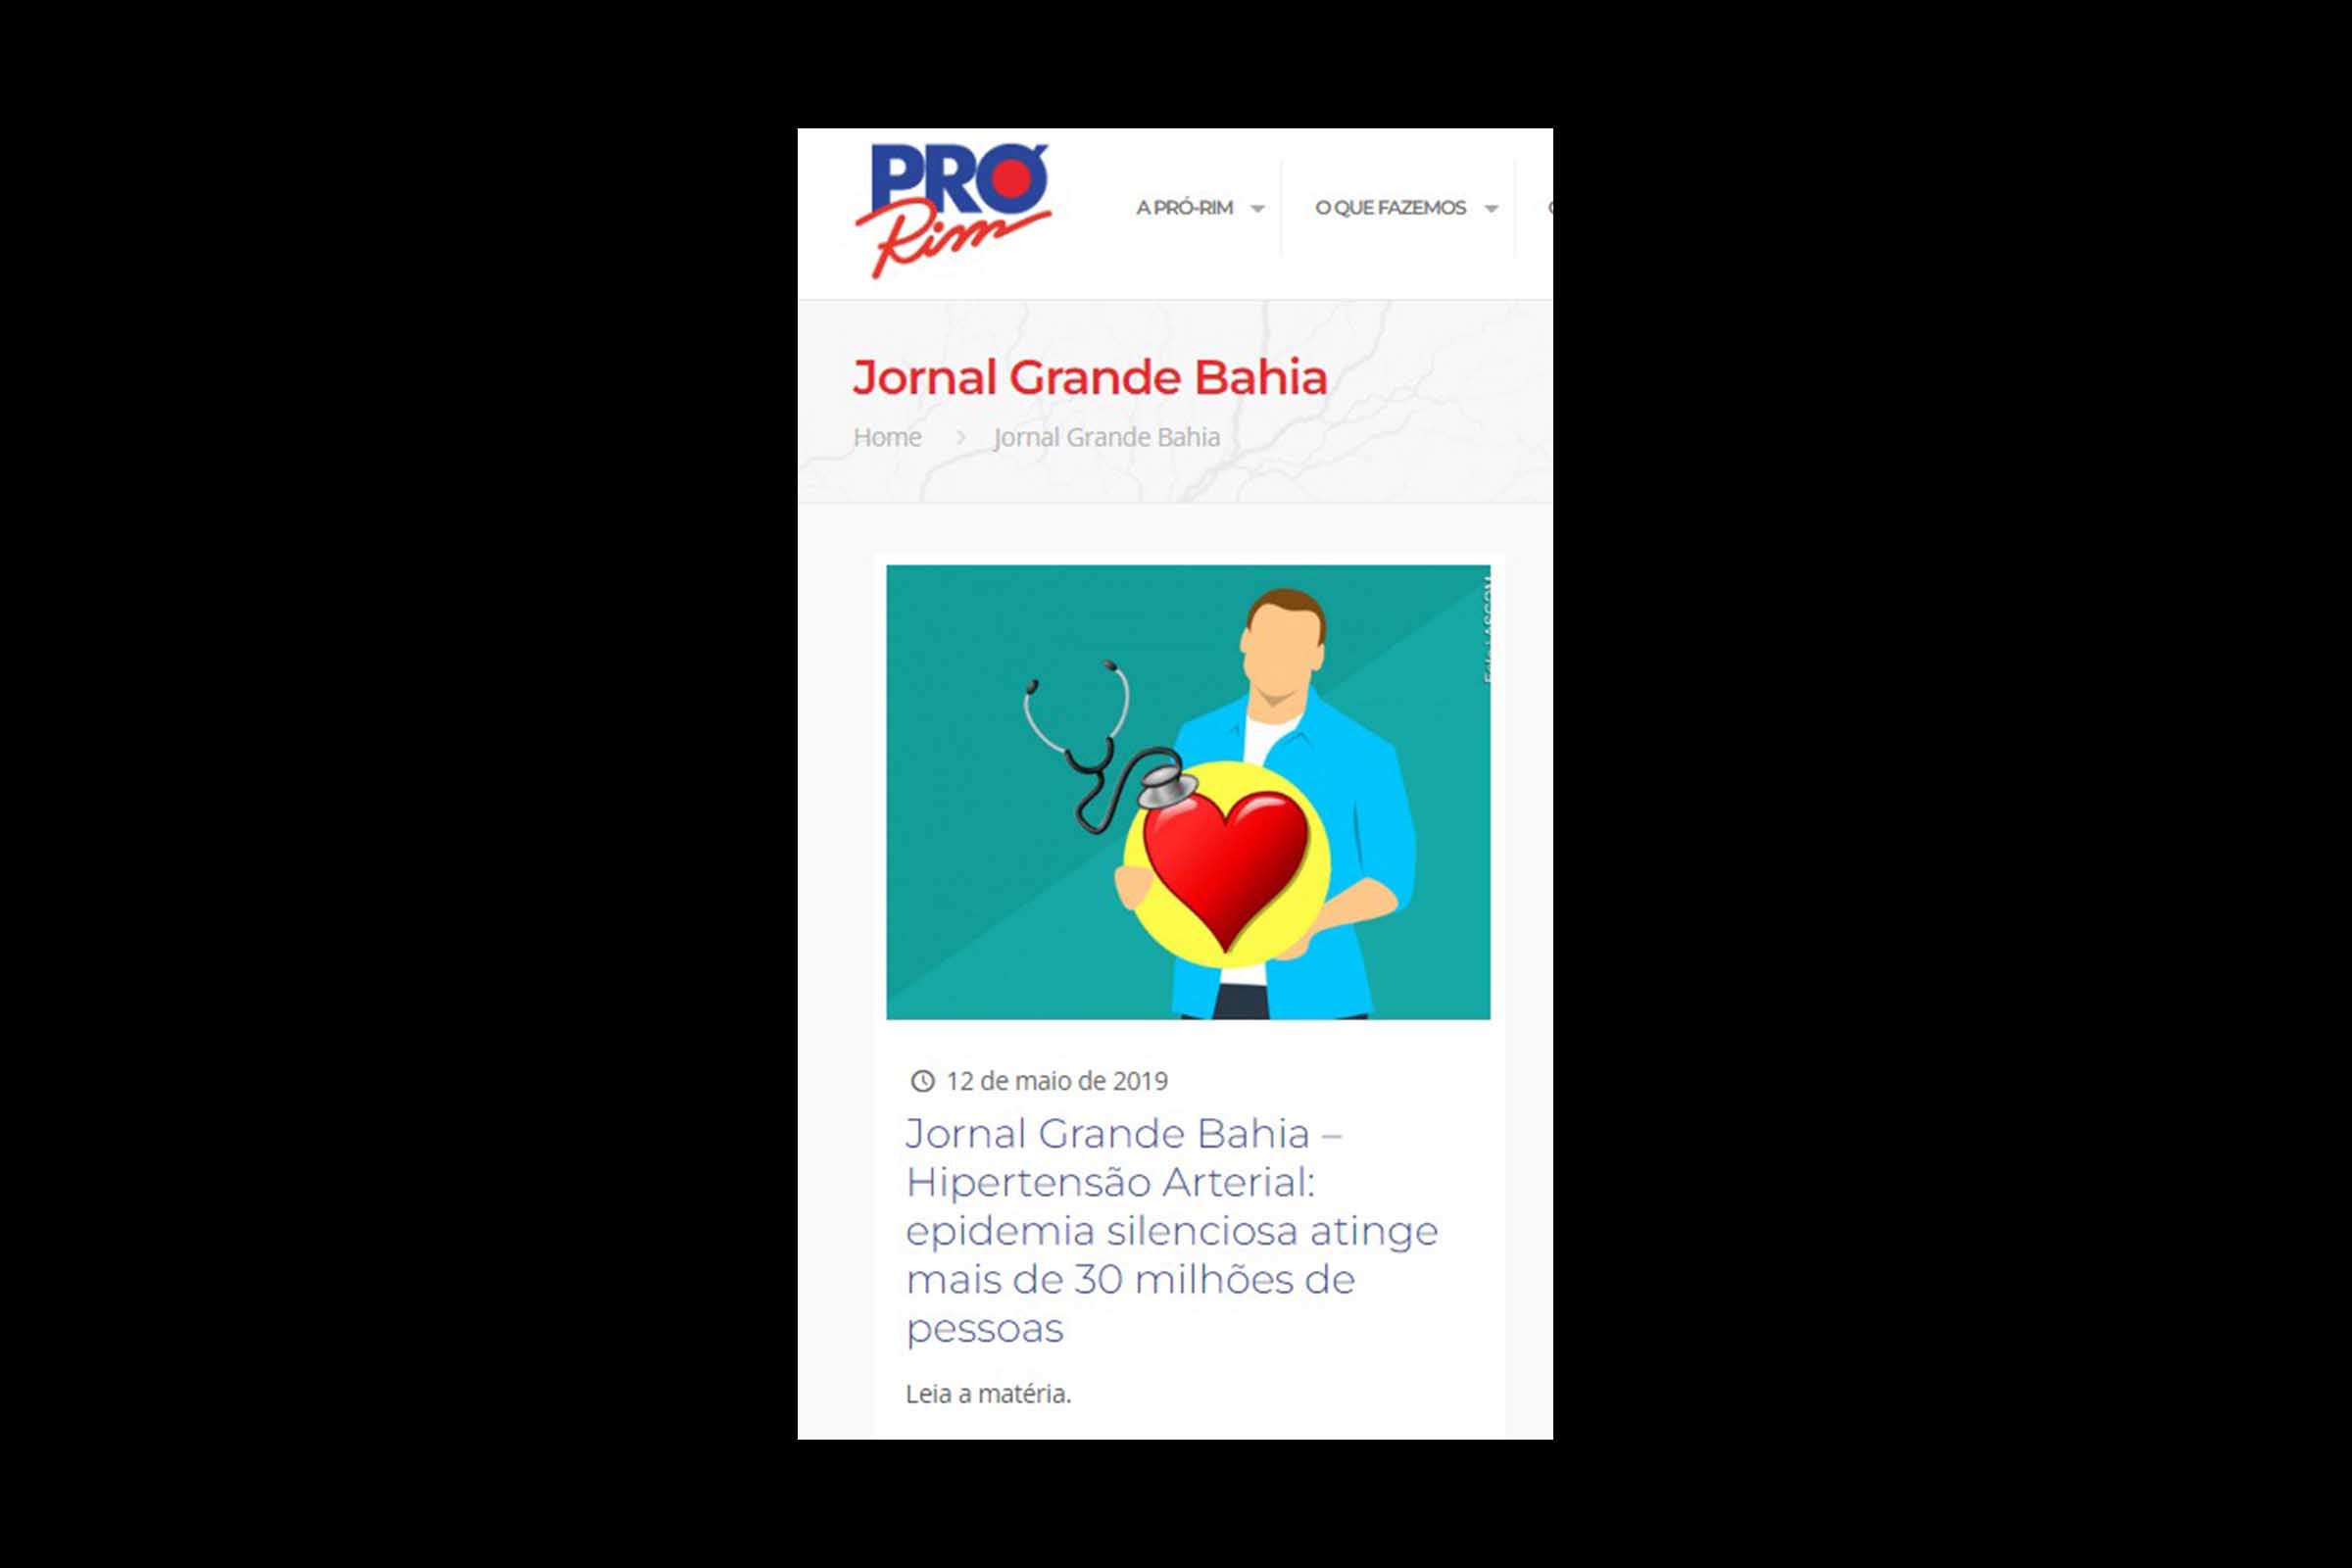 Os livreiros populares no Brasil - Jornal Grande Bahia (JGB)